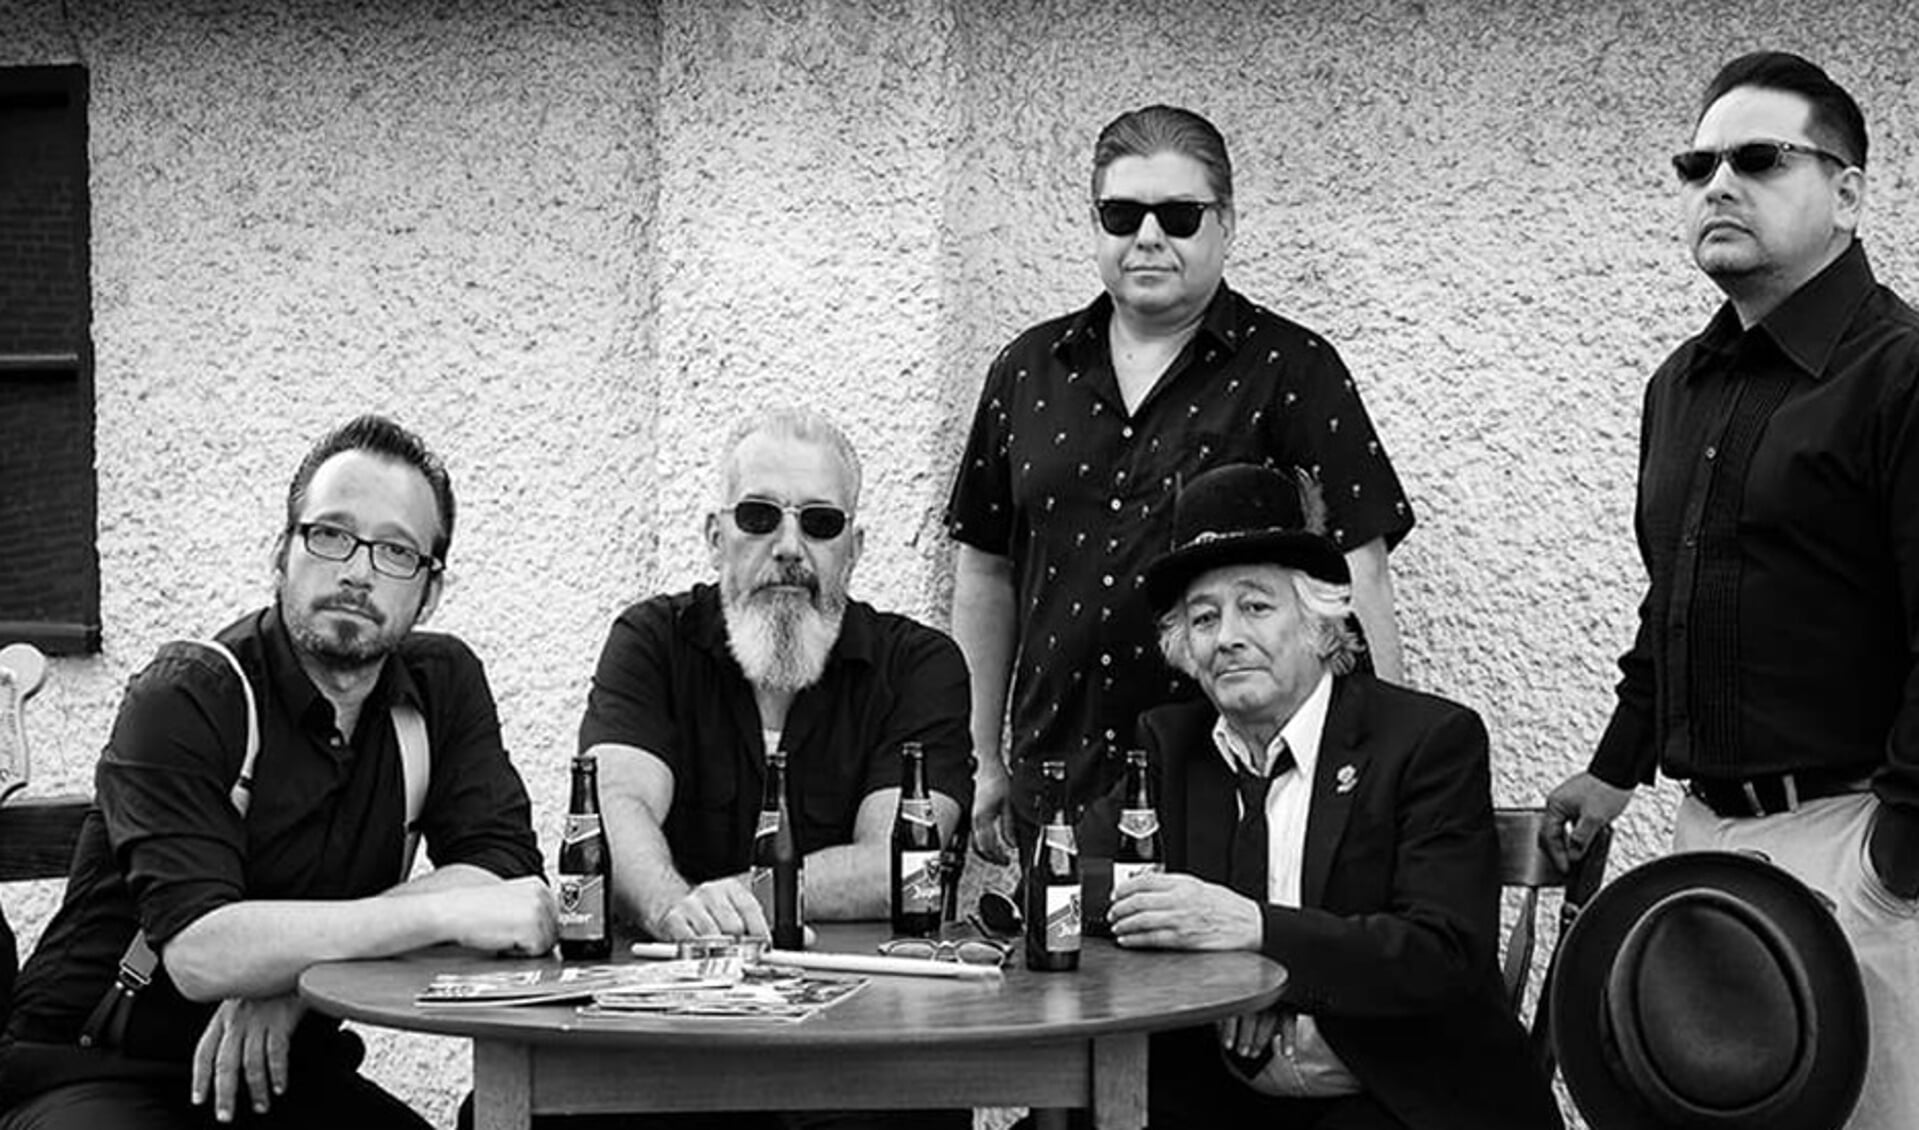 De band The Dibs is een nieuwe Rhythm'n Bluesband met een twist of soul uit het Belgisch/Limburgs grensgebied 